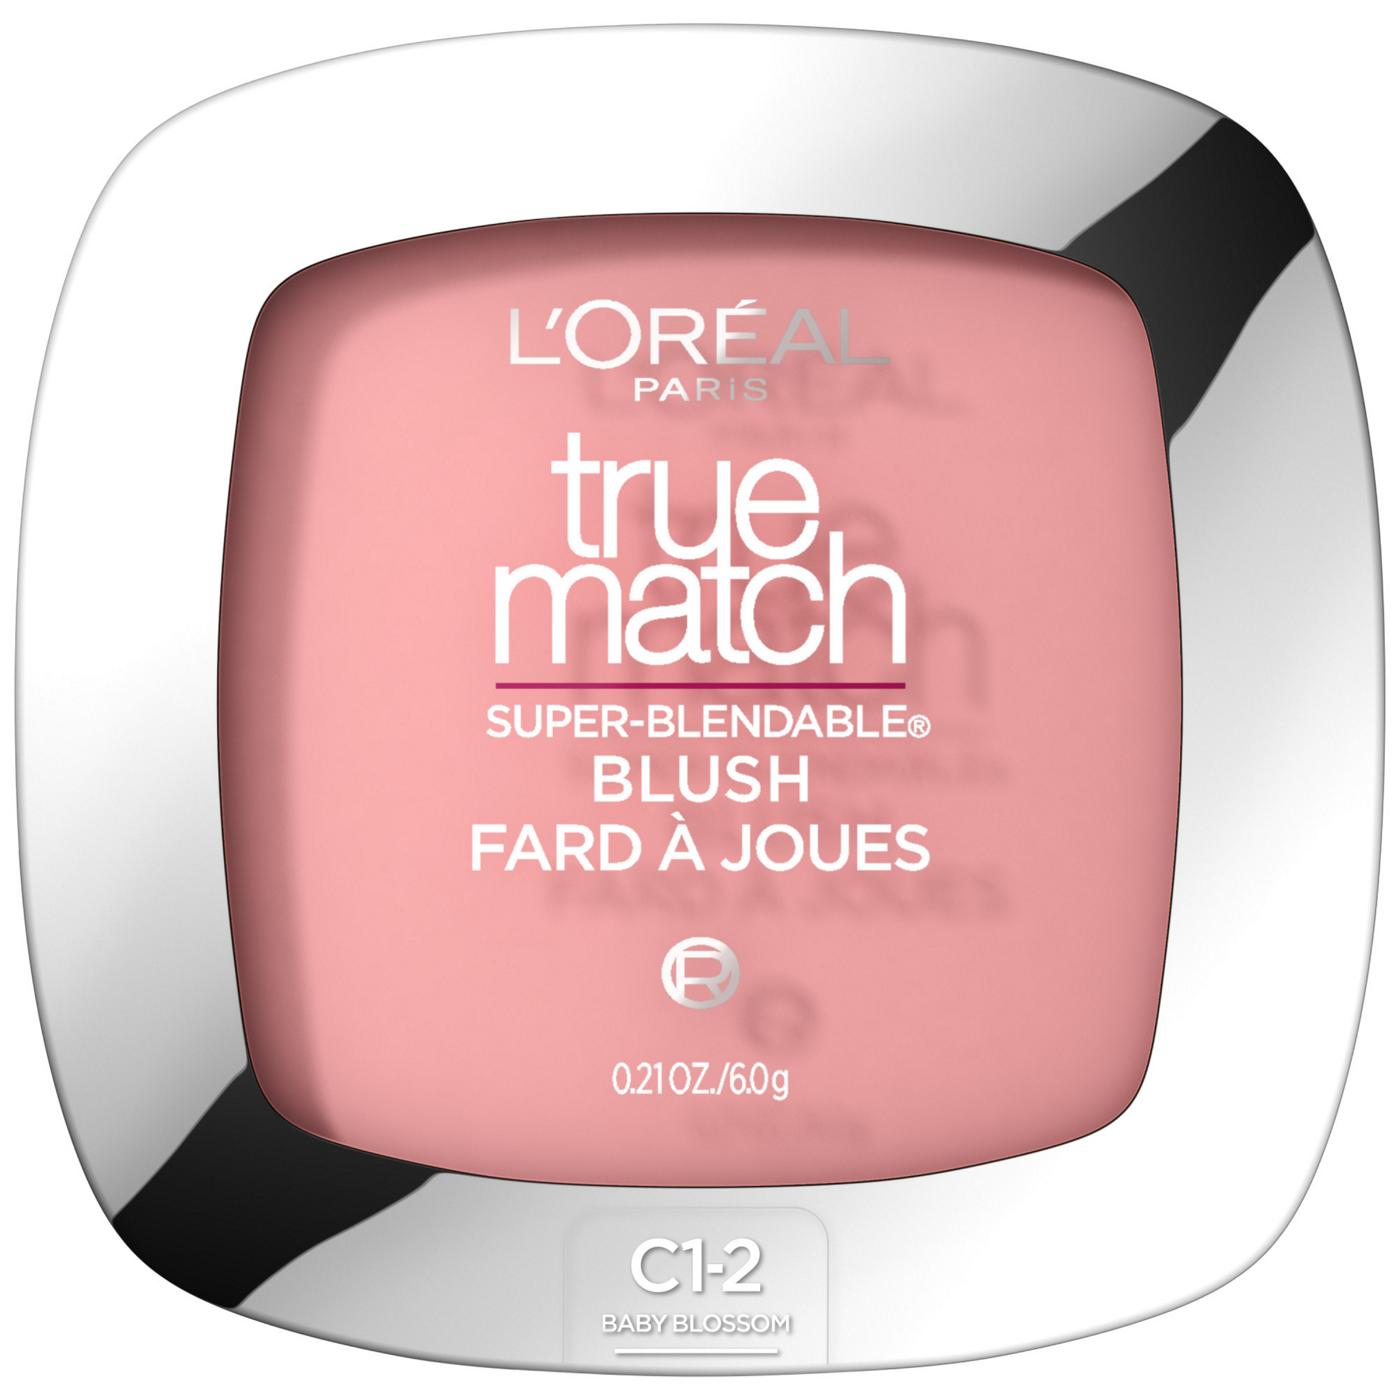 L'Oréal Paris True Match Super-Blendable Blush, Soft Powder Texture Baby Blossom; image 1 of 5